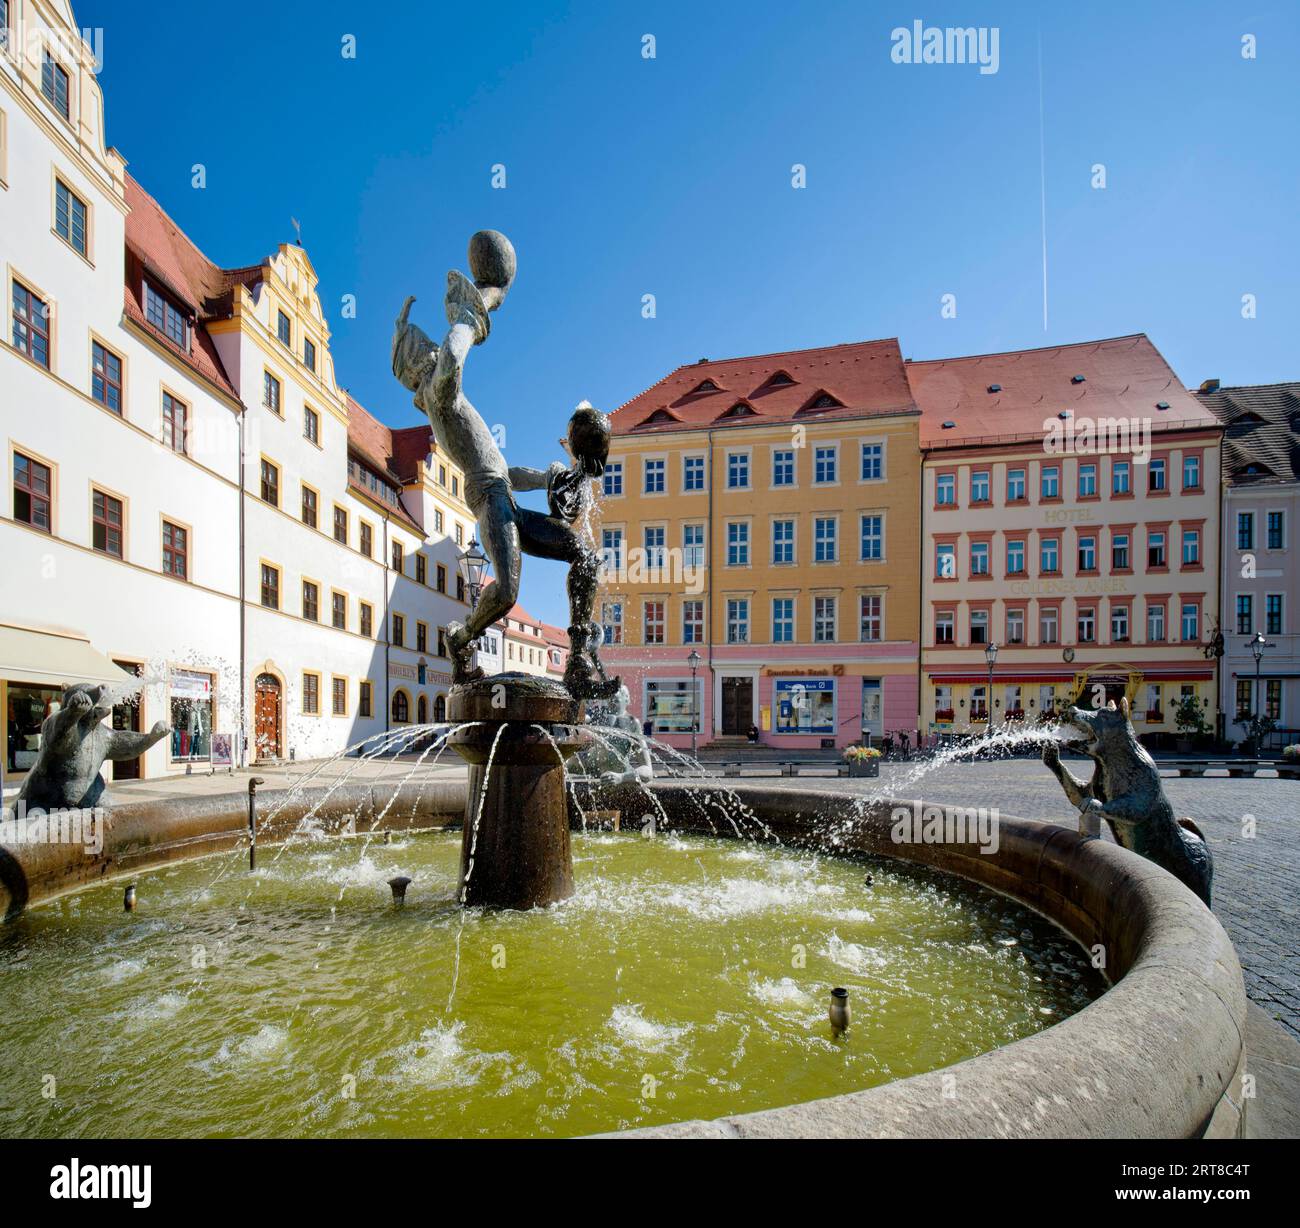 Marktbrunnen und Musiker der Künstlerin Erika Harbort, Marktplatz, Torgau, Sachsen, Deutschland Stockfoto